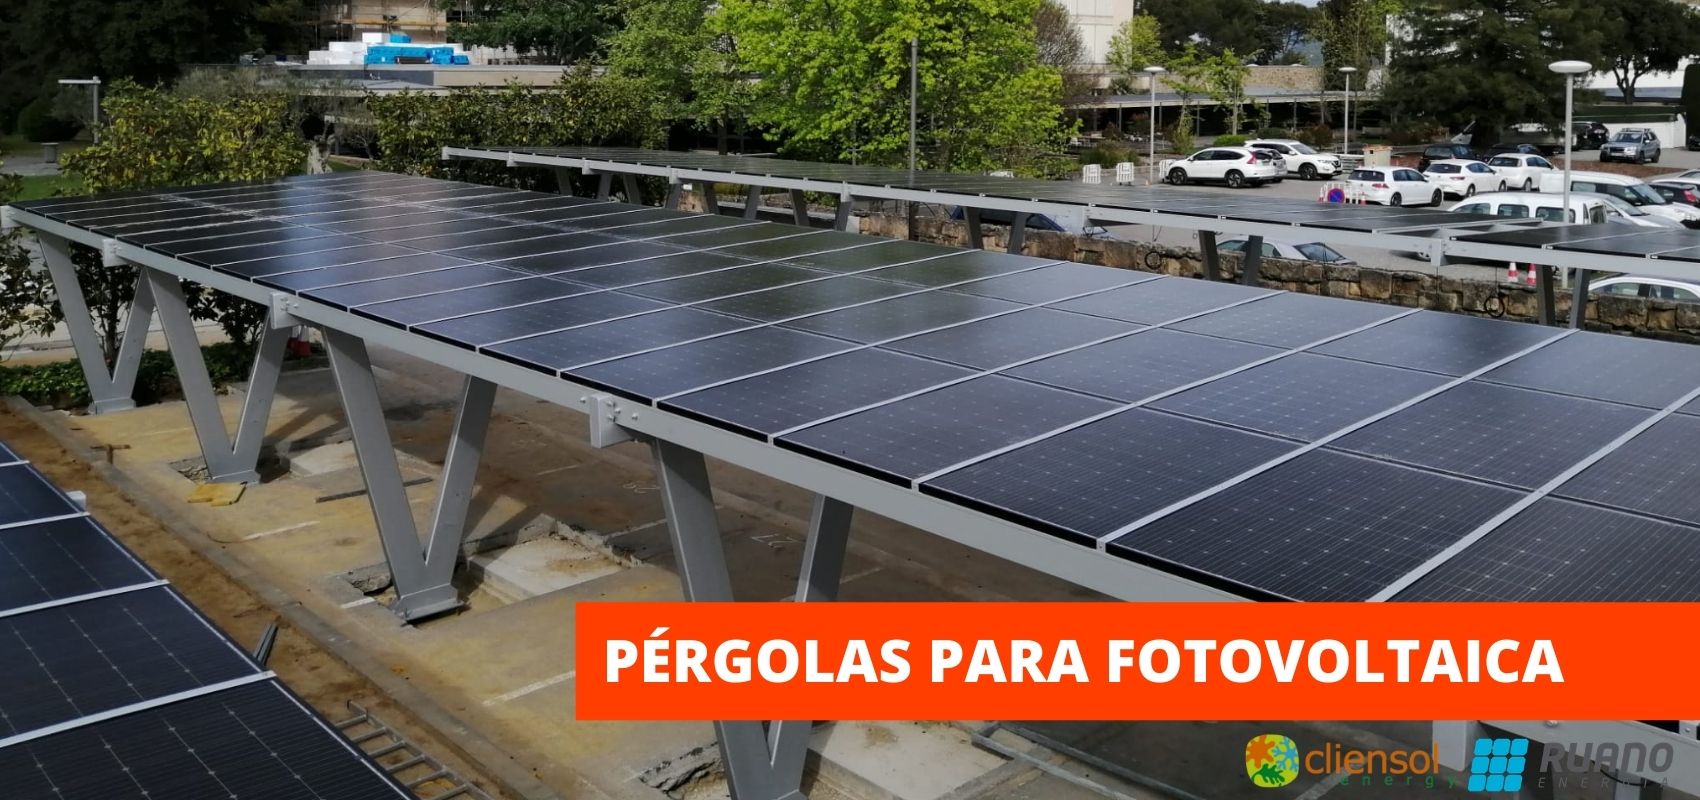 instalaciones solares para el ahorro de energía y paneles fotovoltaicos para monitorizar el consumo con ayuda de pergolas.jpg